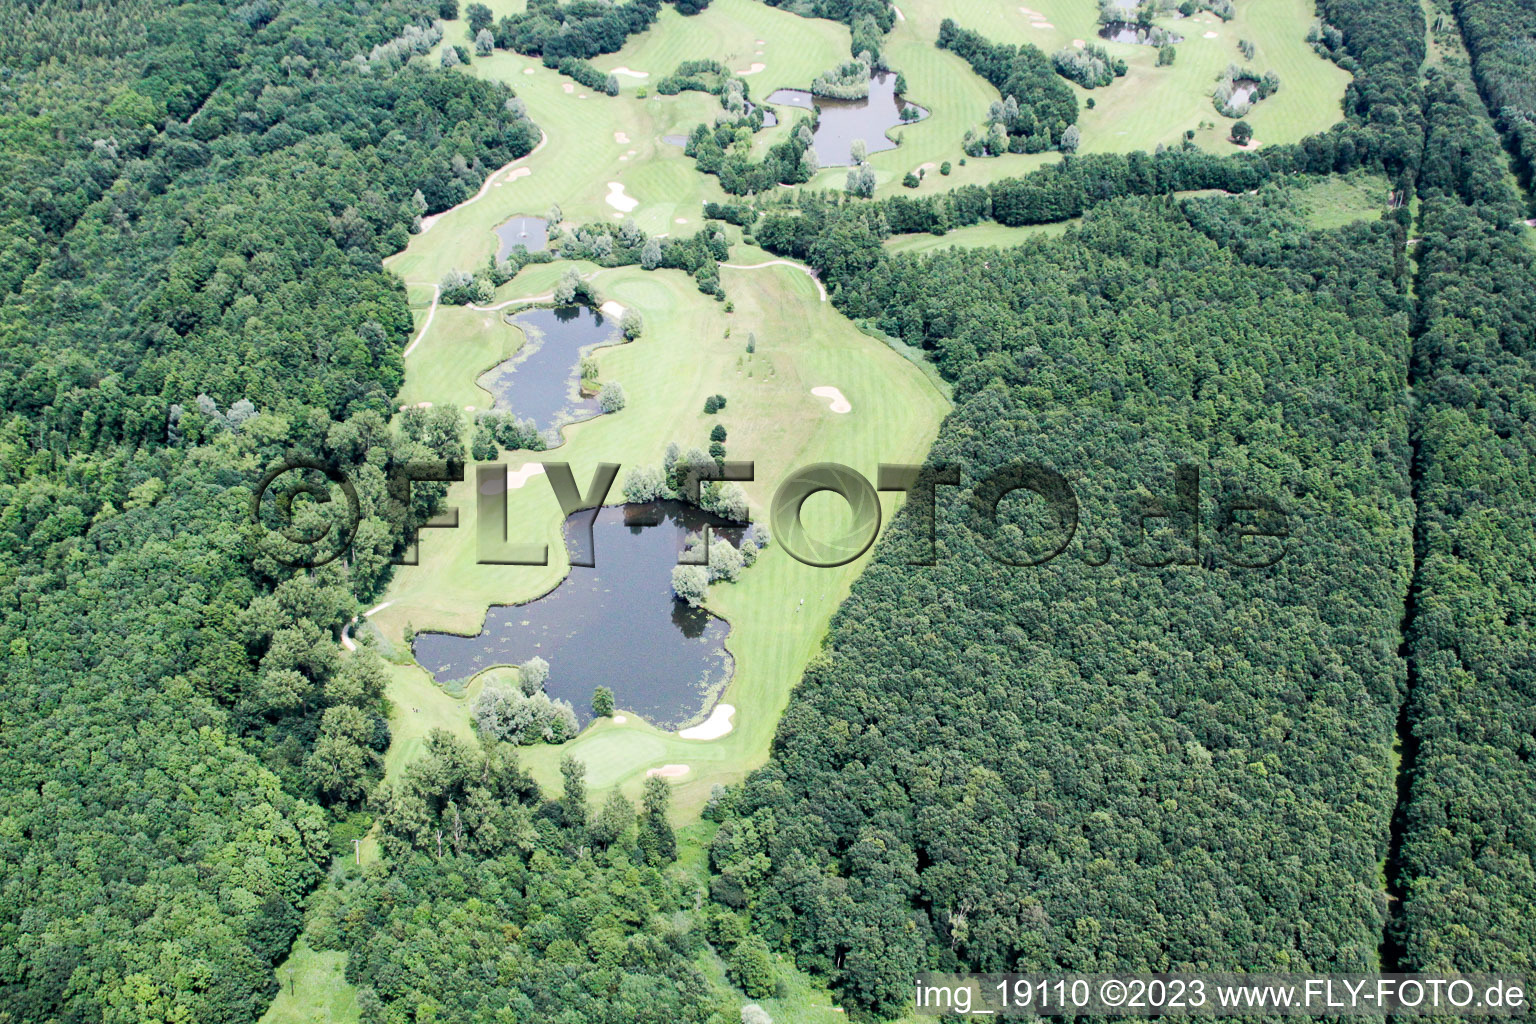 Vue oblique de Terrain de golf à Soufflenheim dans le département Bas Rhin, France